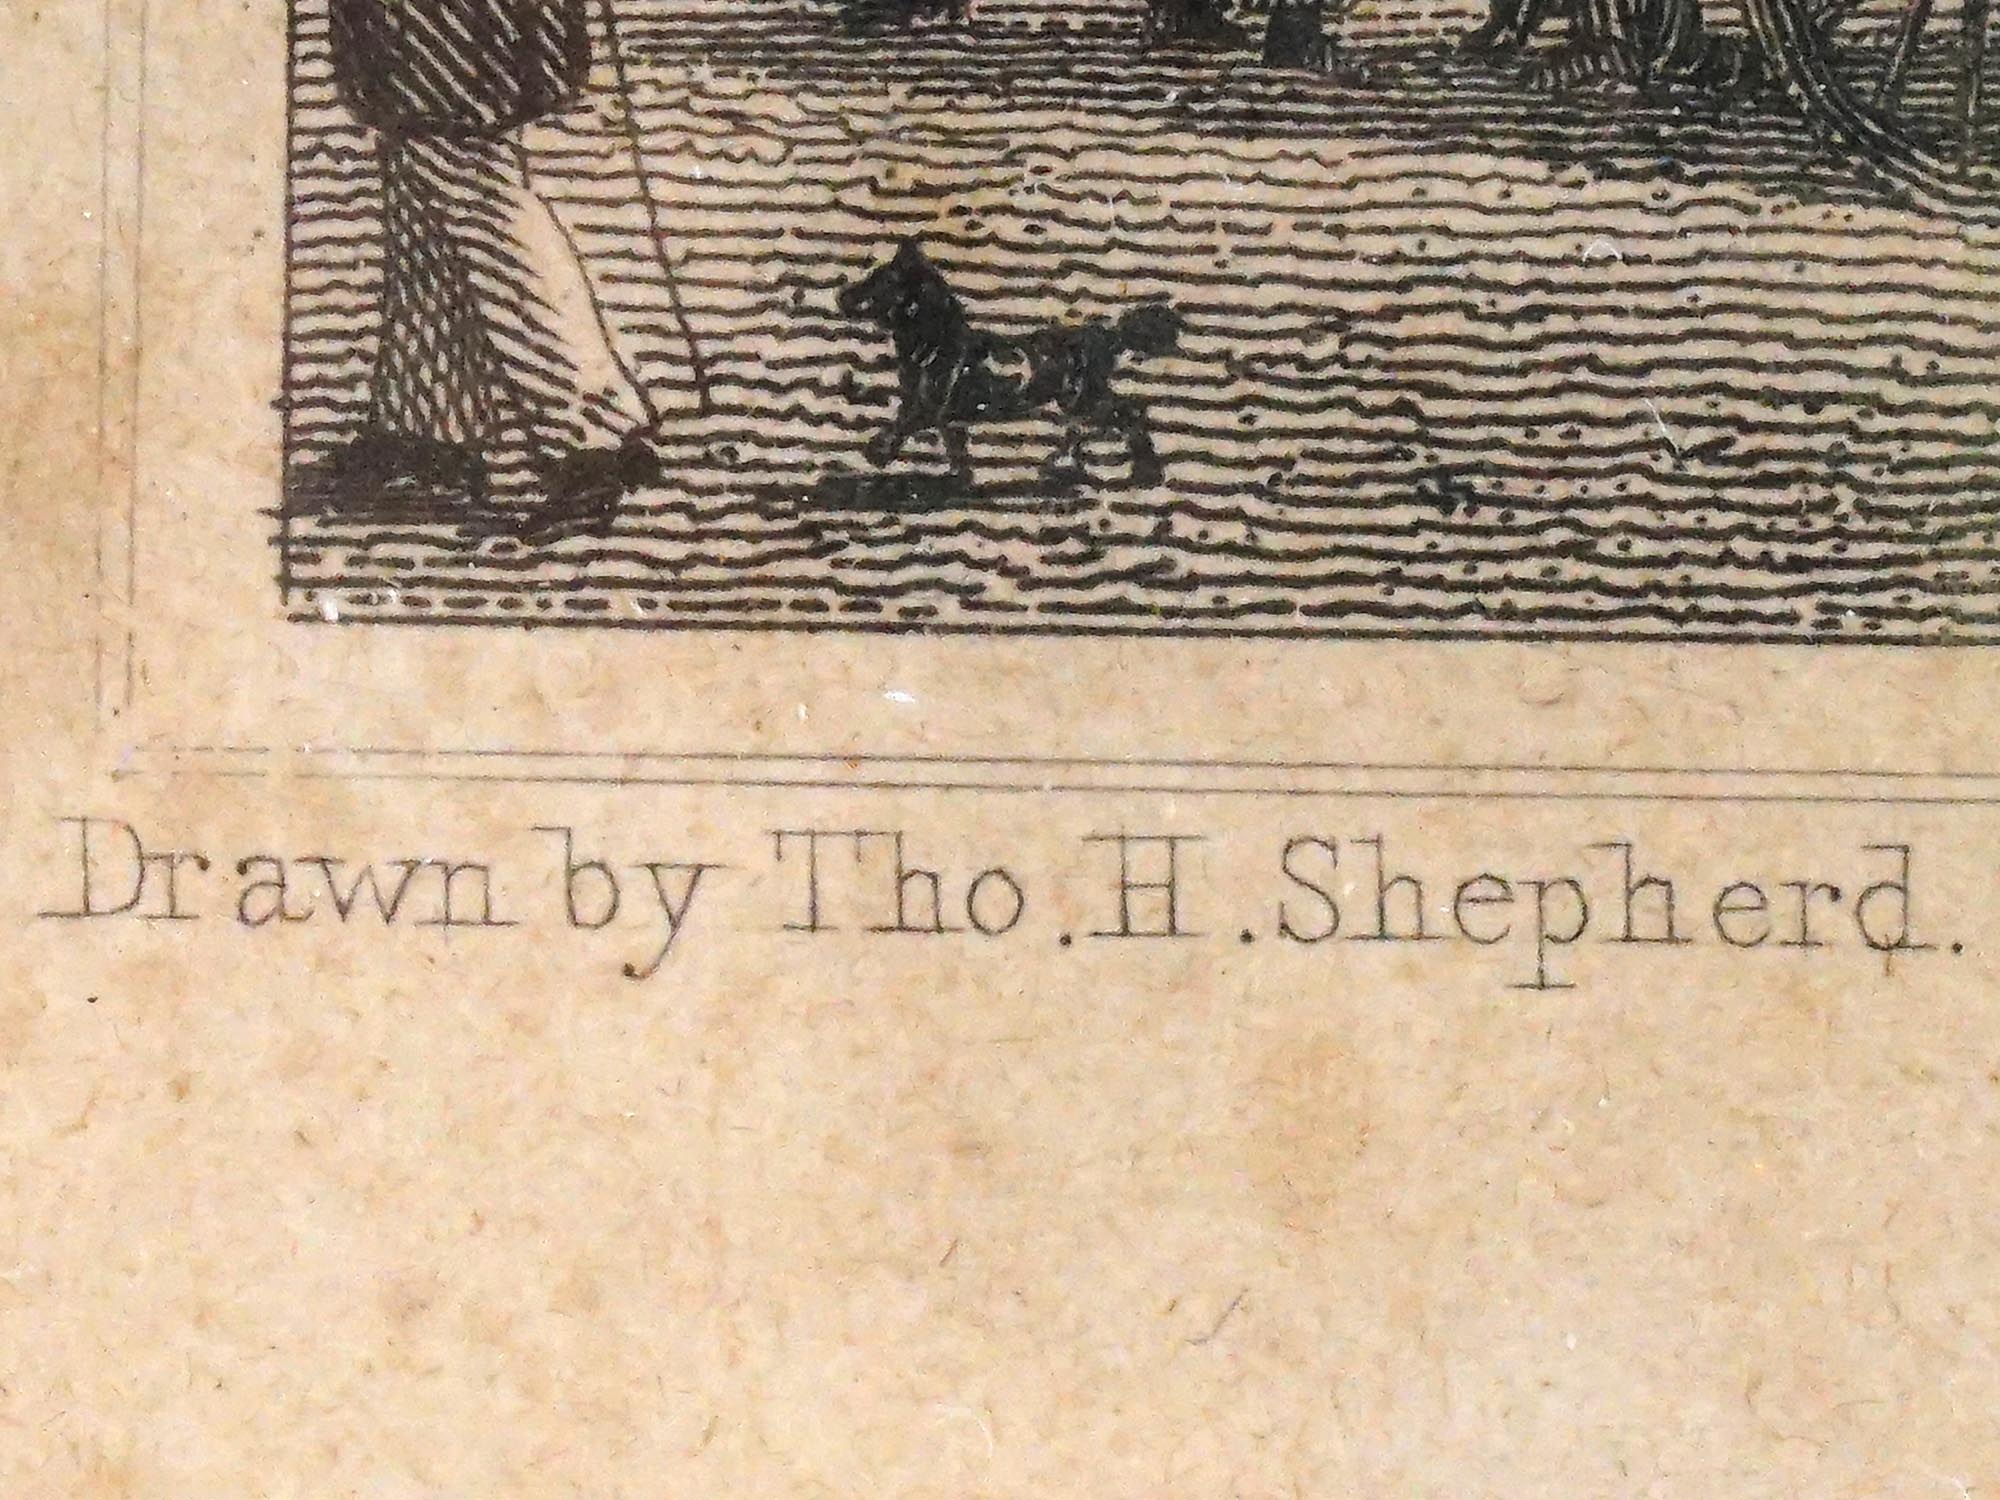 PAIR BRITISH 19TH C ENGRAVINGS BY THOMAS SHEPHERD PIC-6